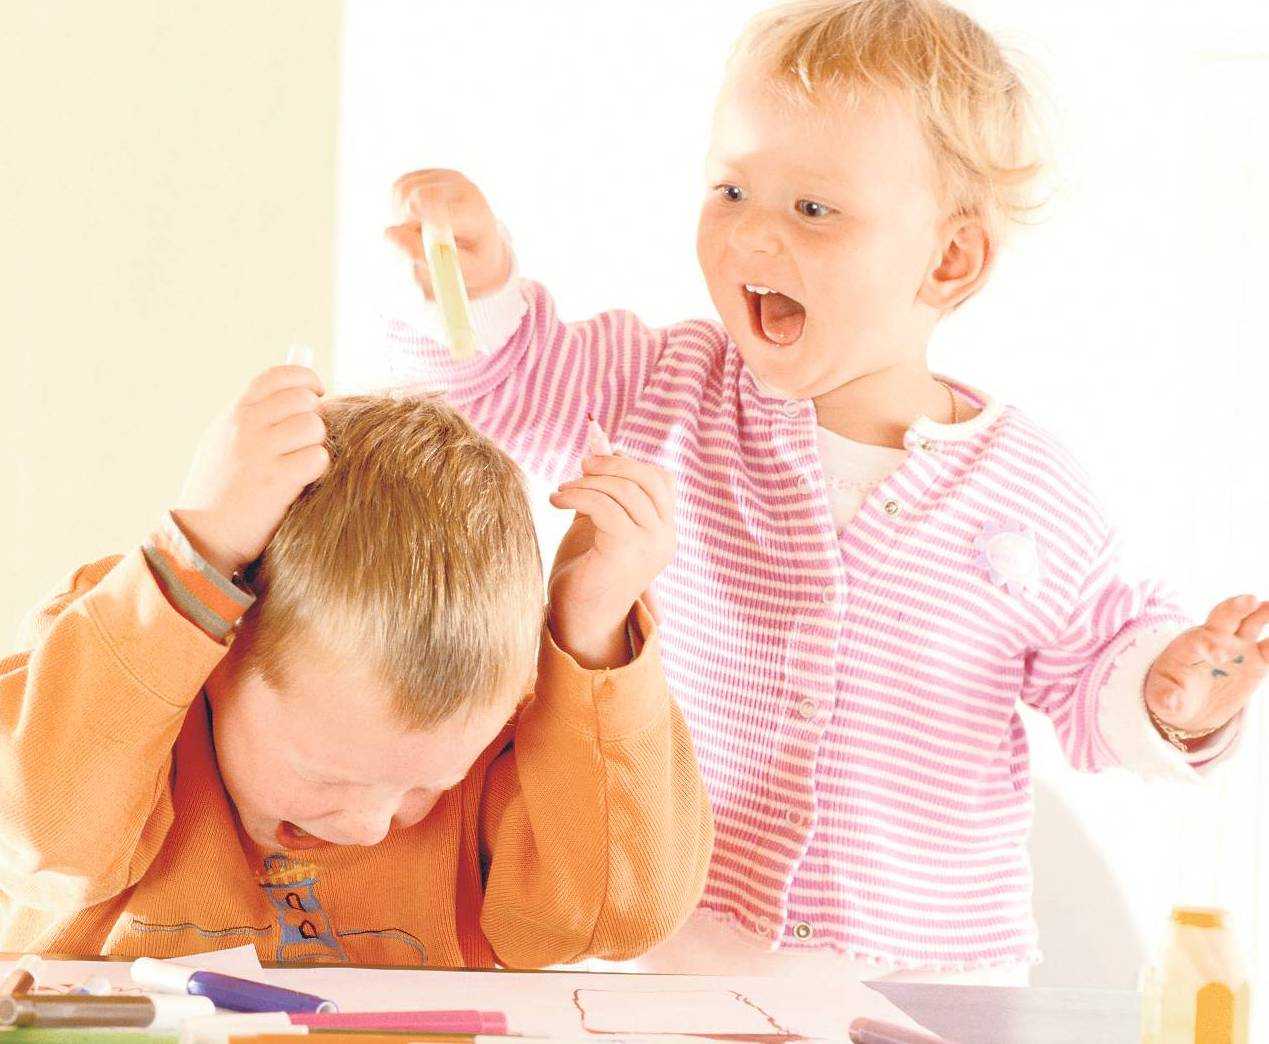 Агрессия у ребенка 4 или 5 лет: почему возникает и что делать? советы психолога - лидия панькова